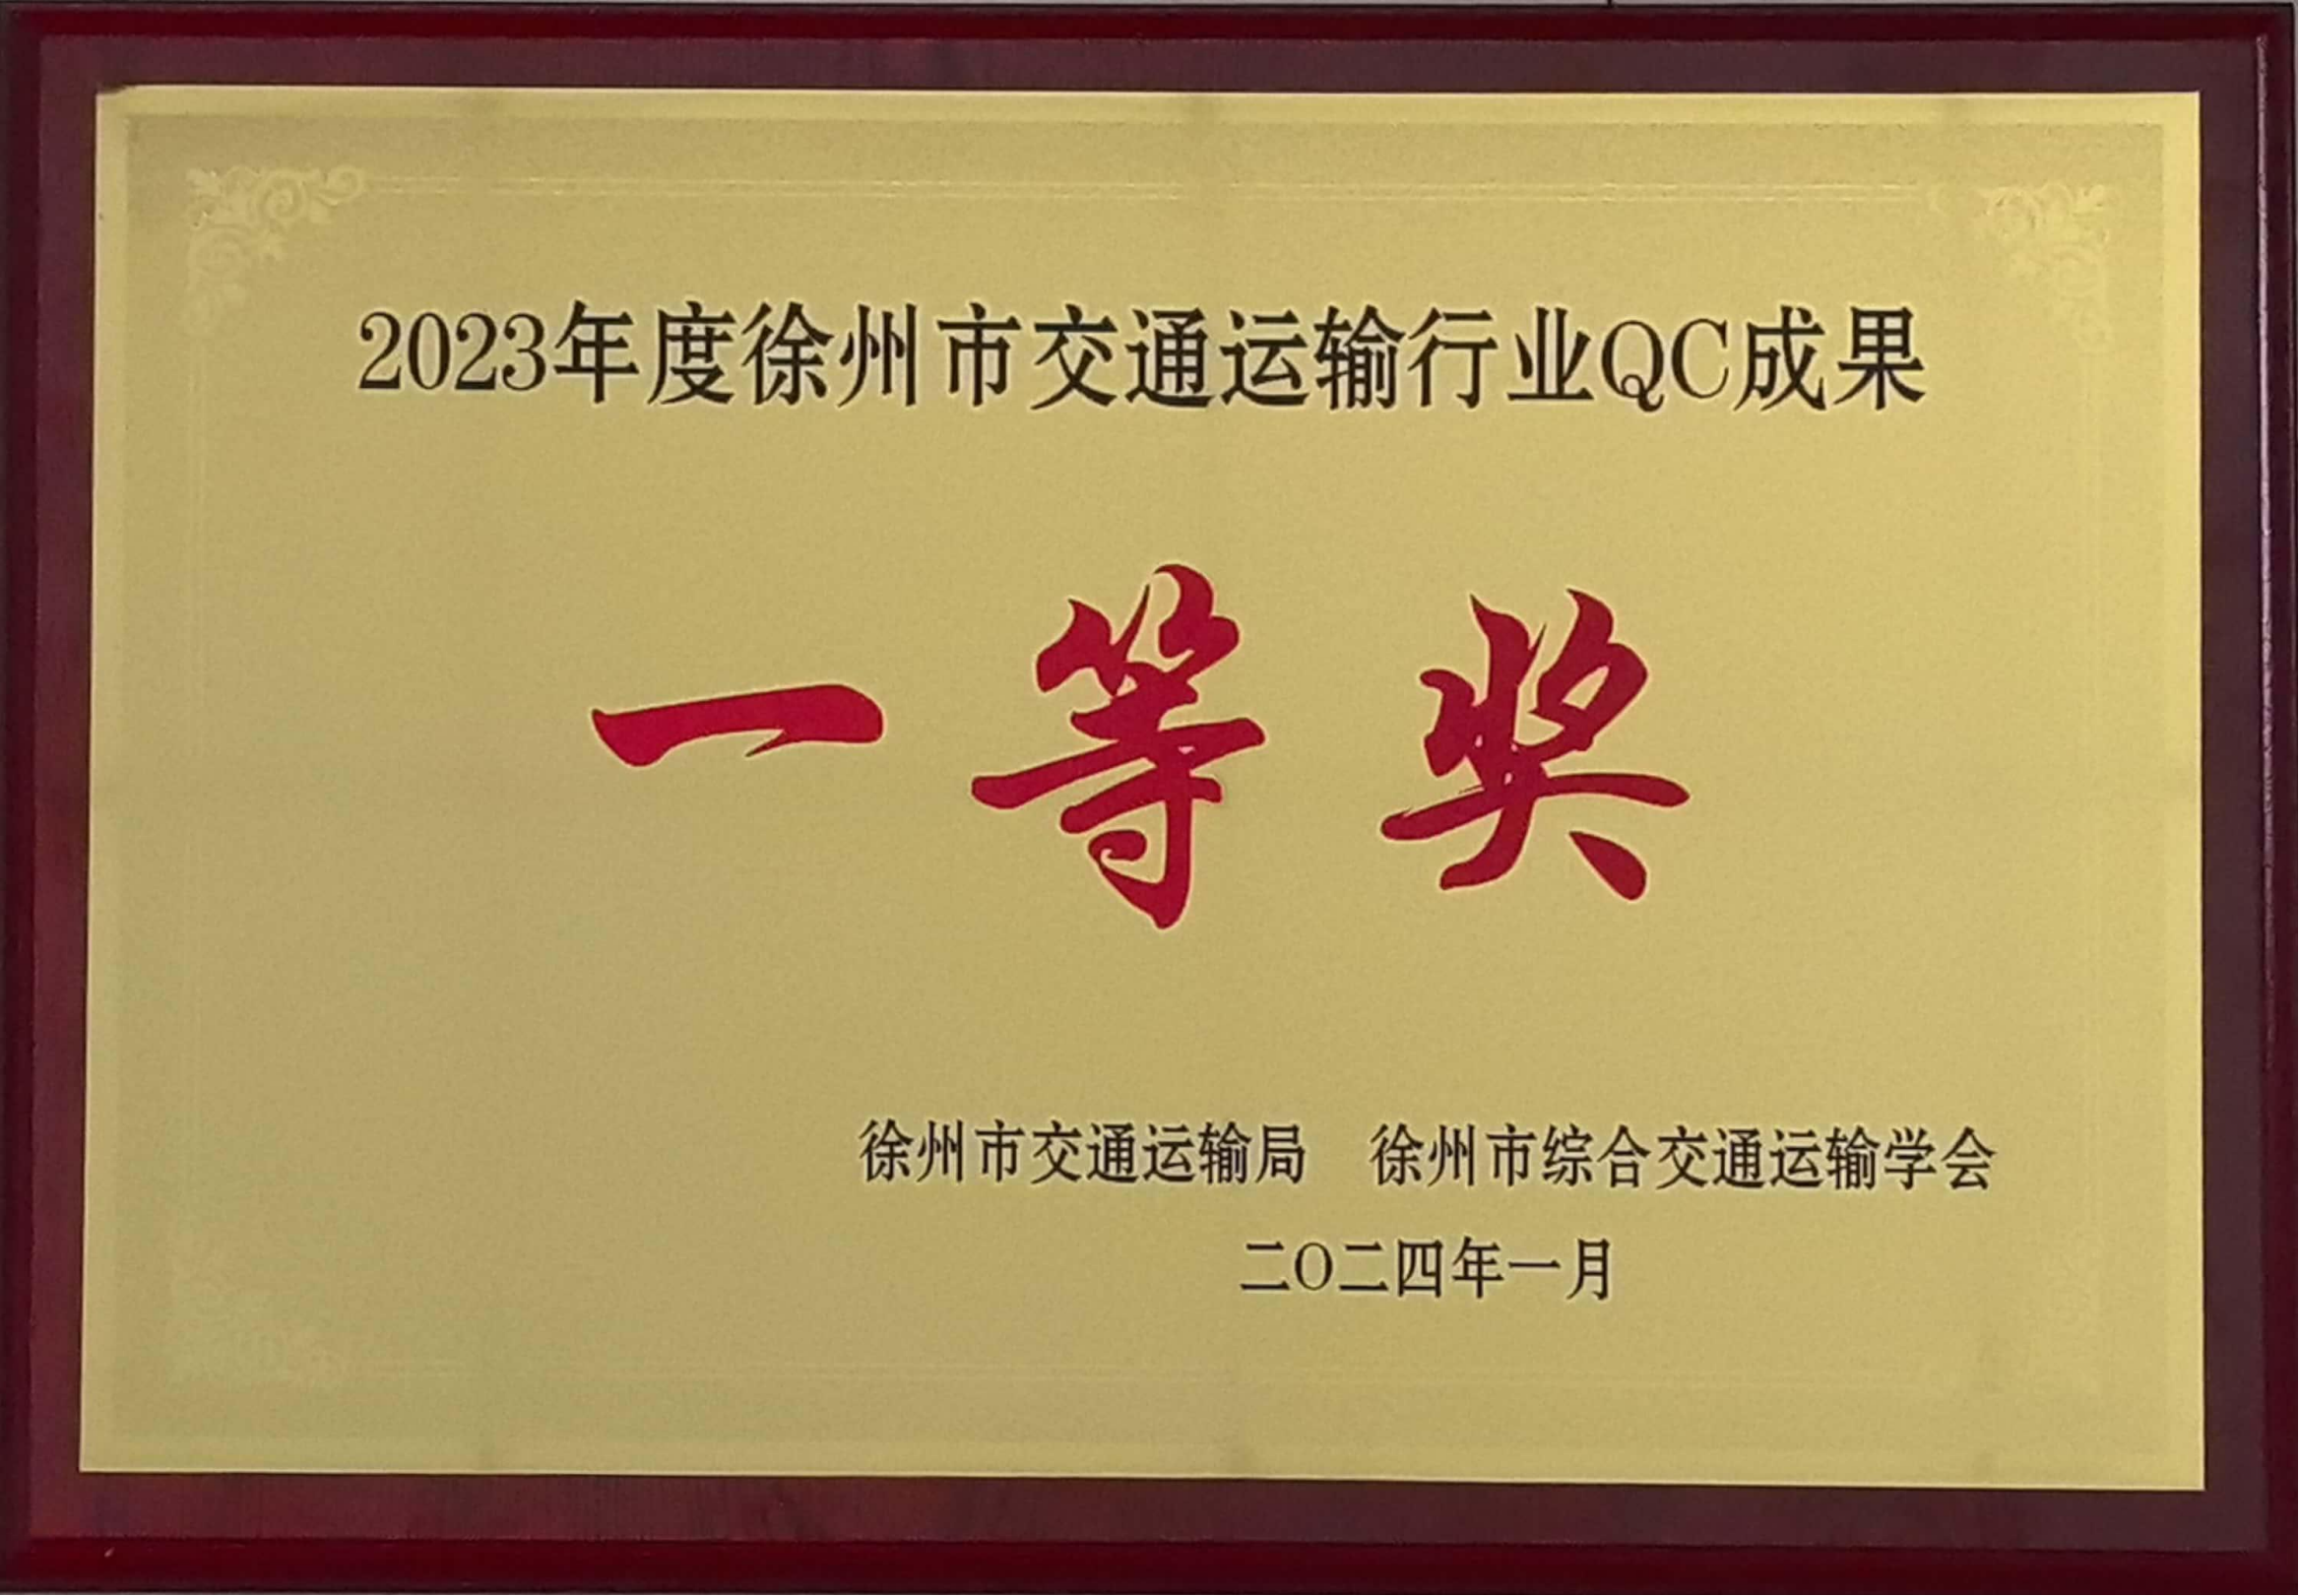 尊龙凯时港务课题荣获徐州市交通运输行业QC结果一等奖